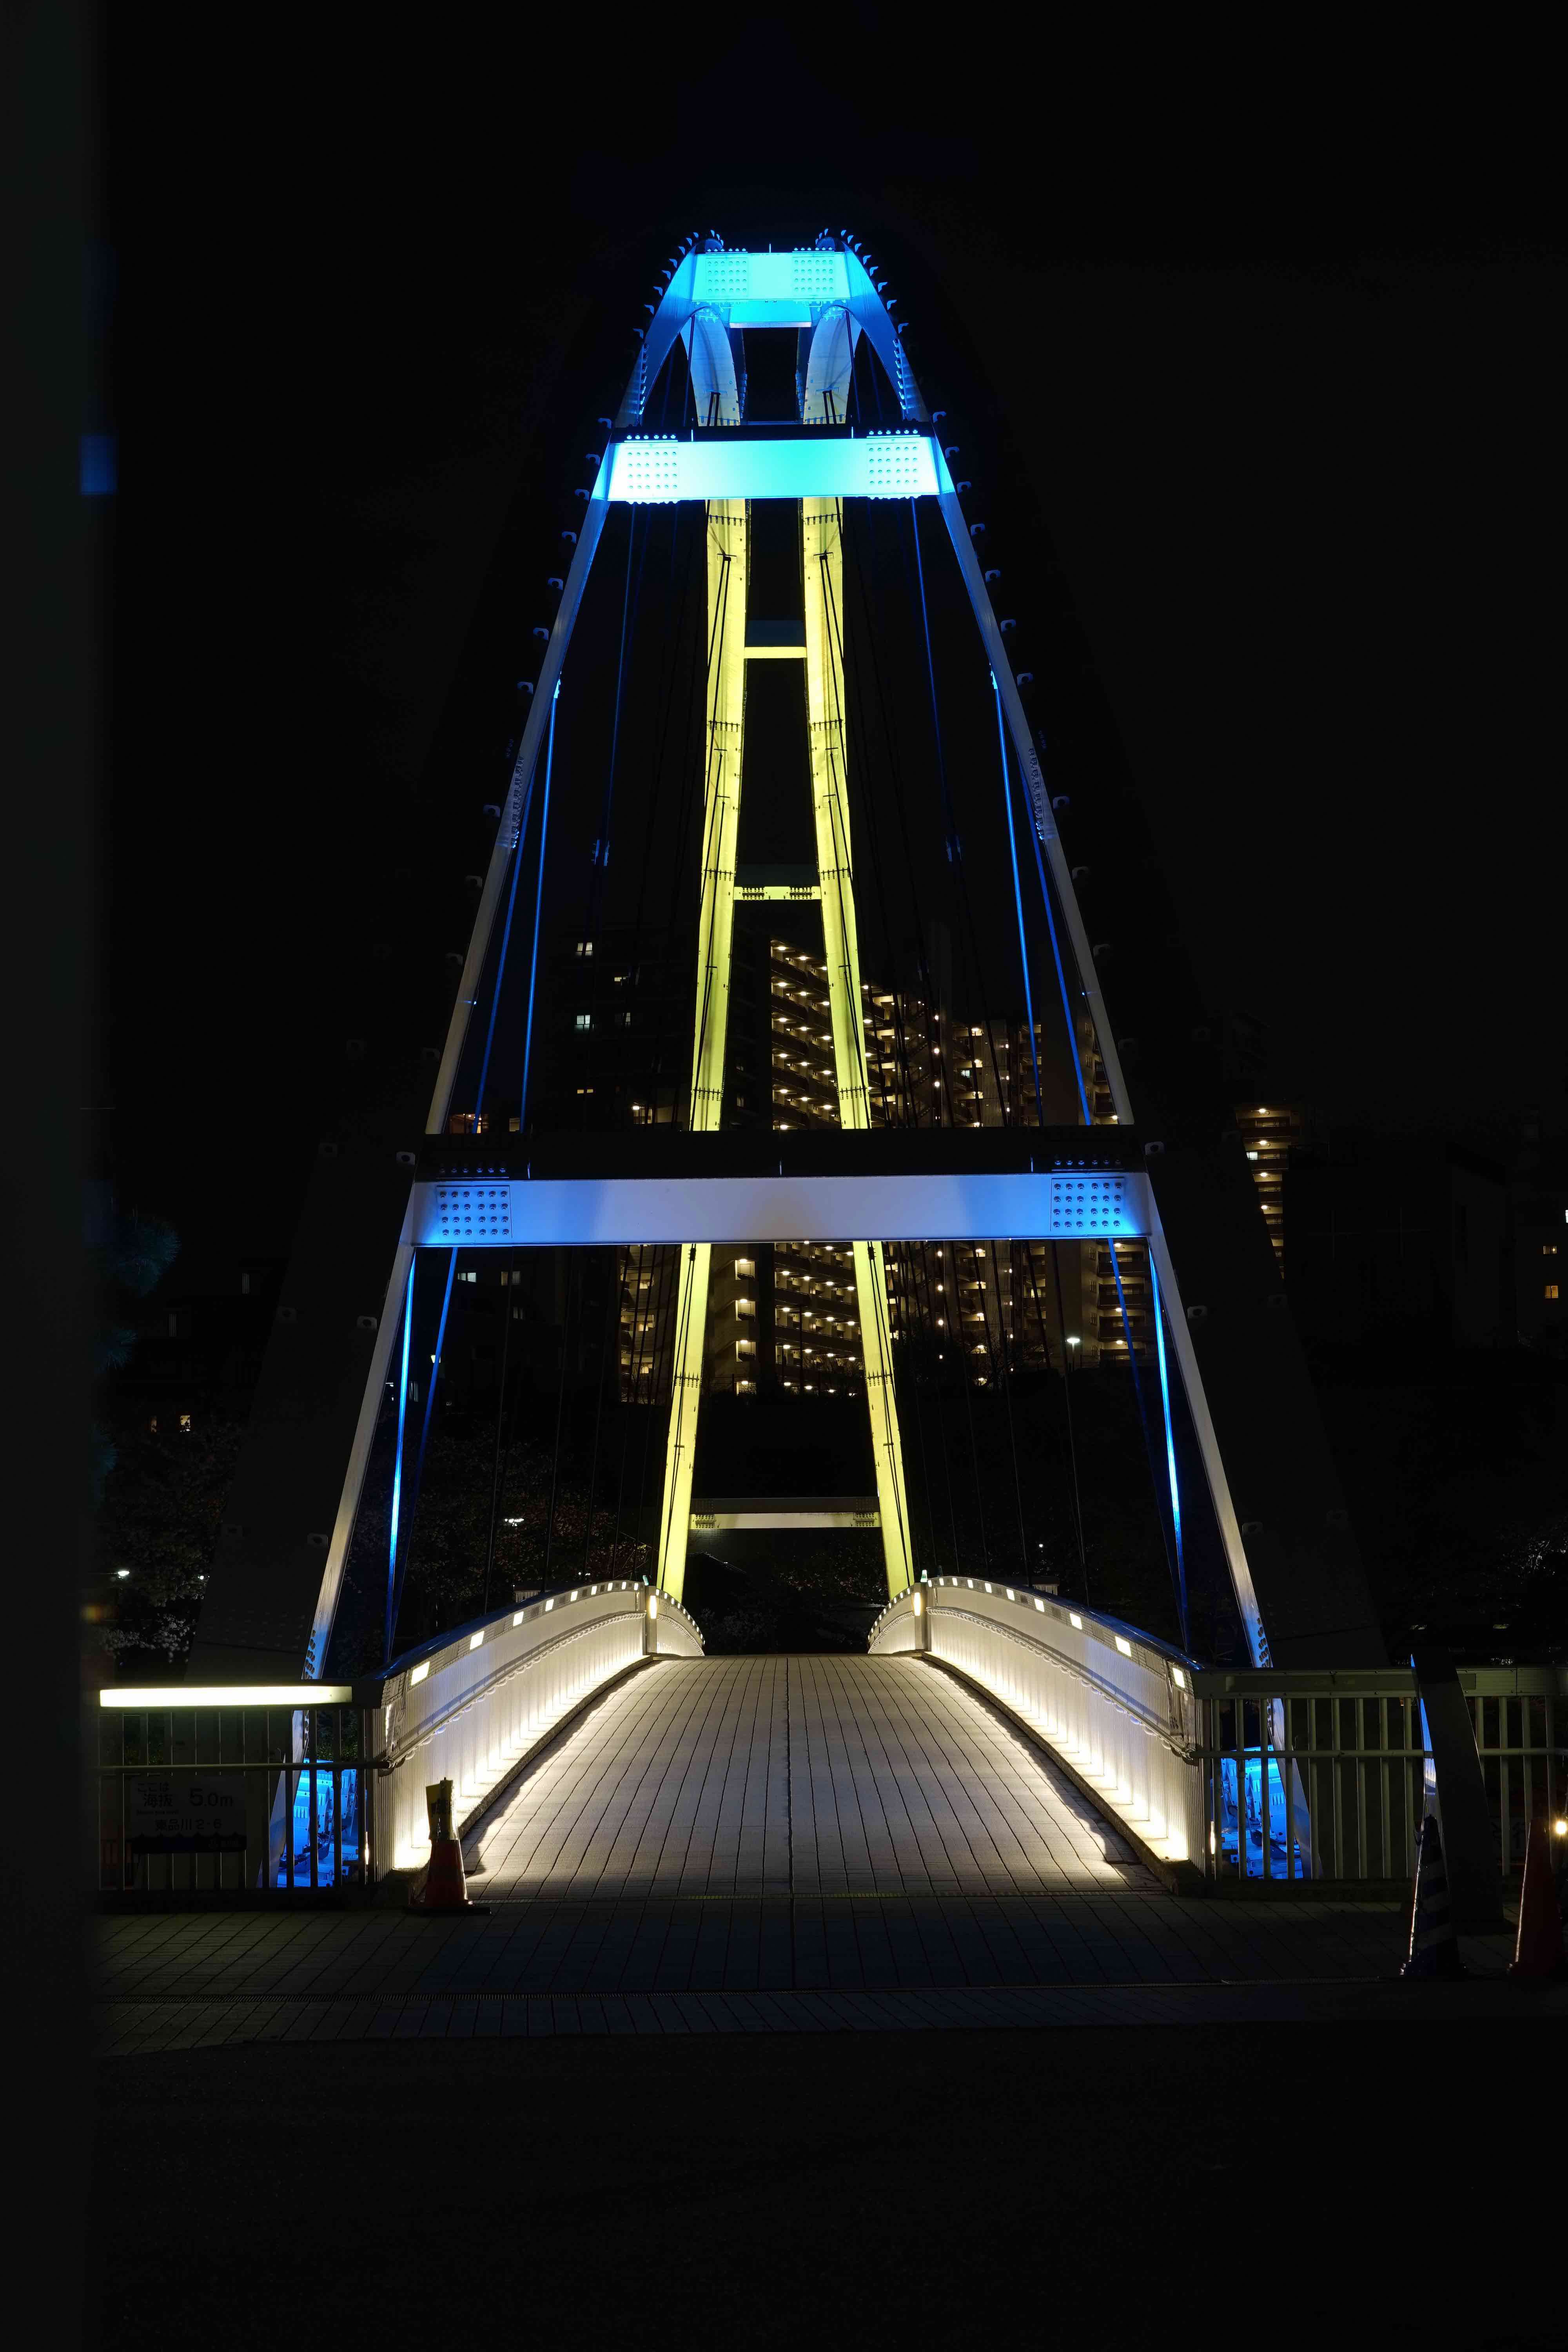 ライトアップされている橋をたてにとった写真